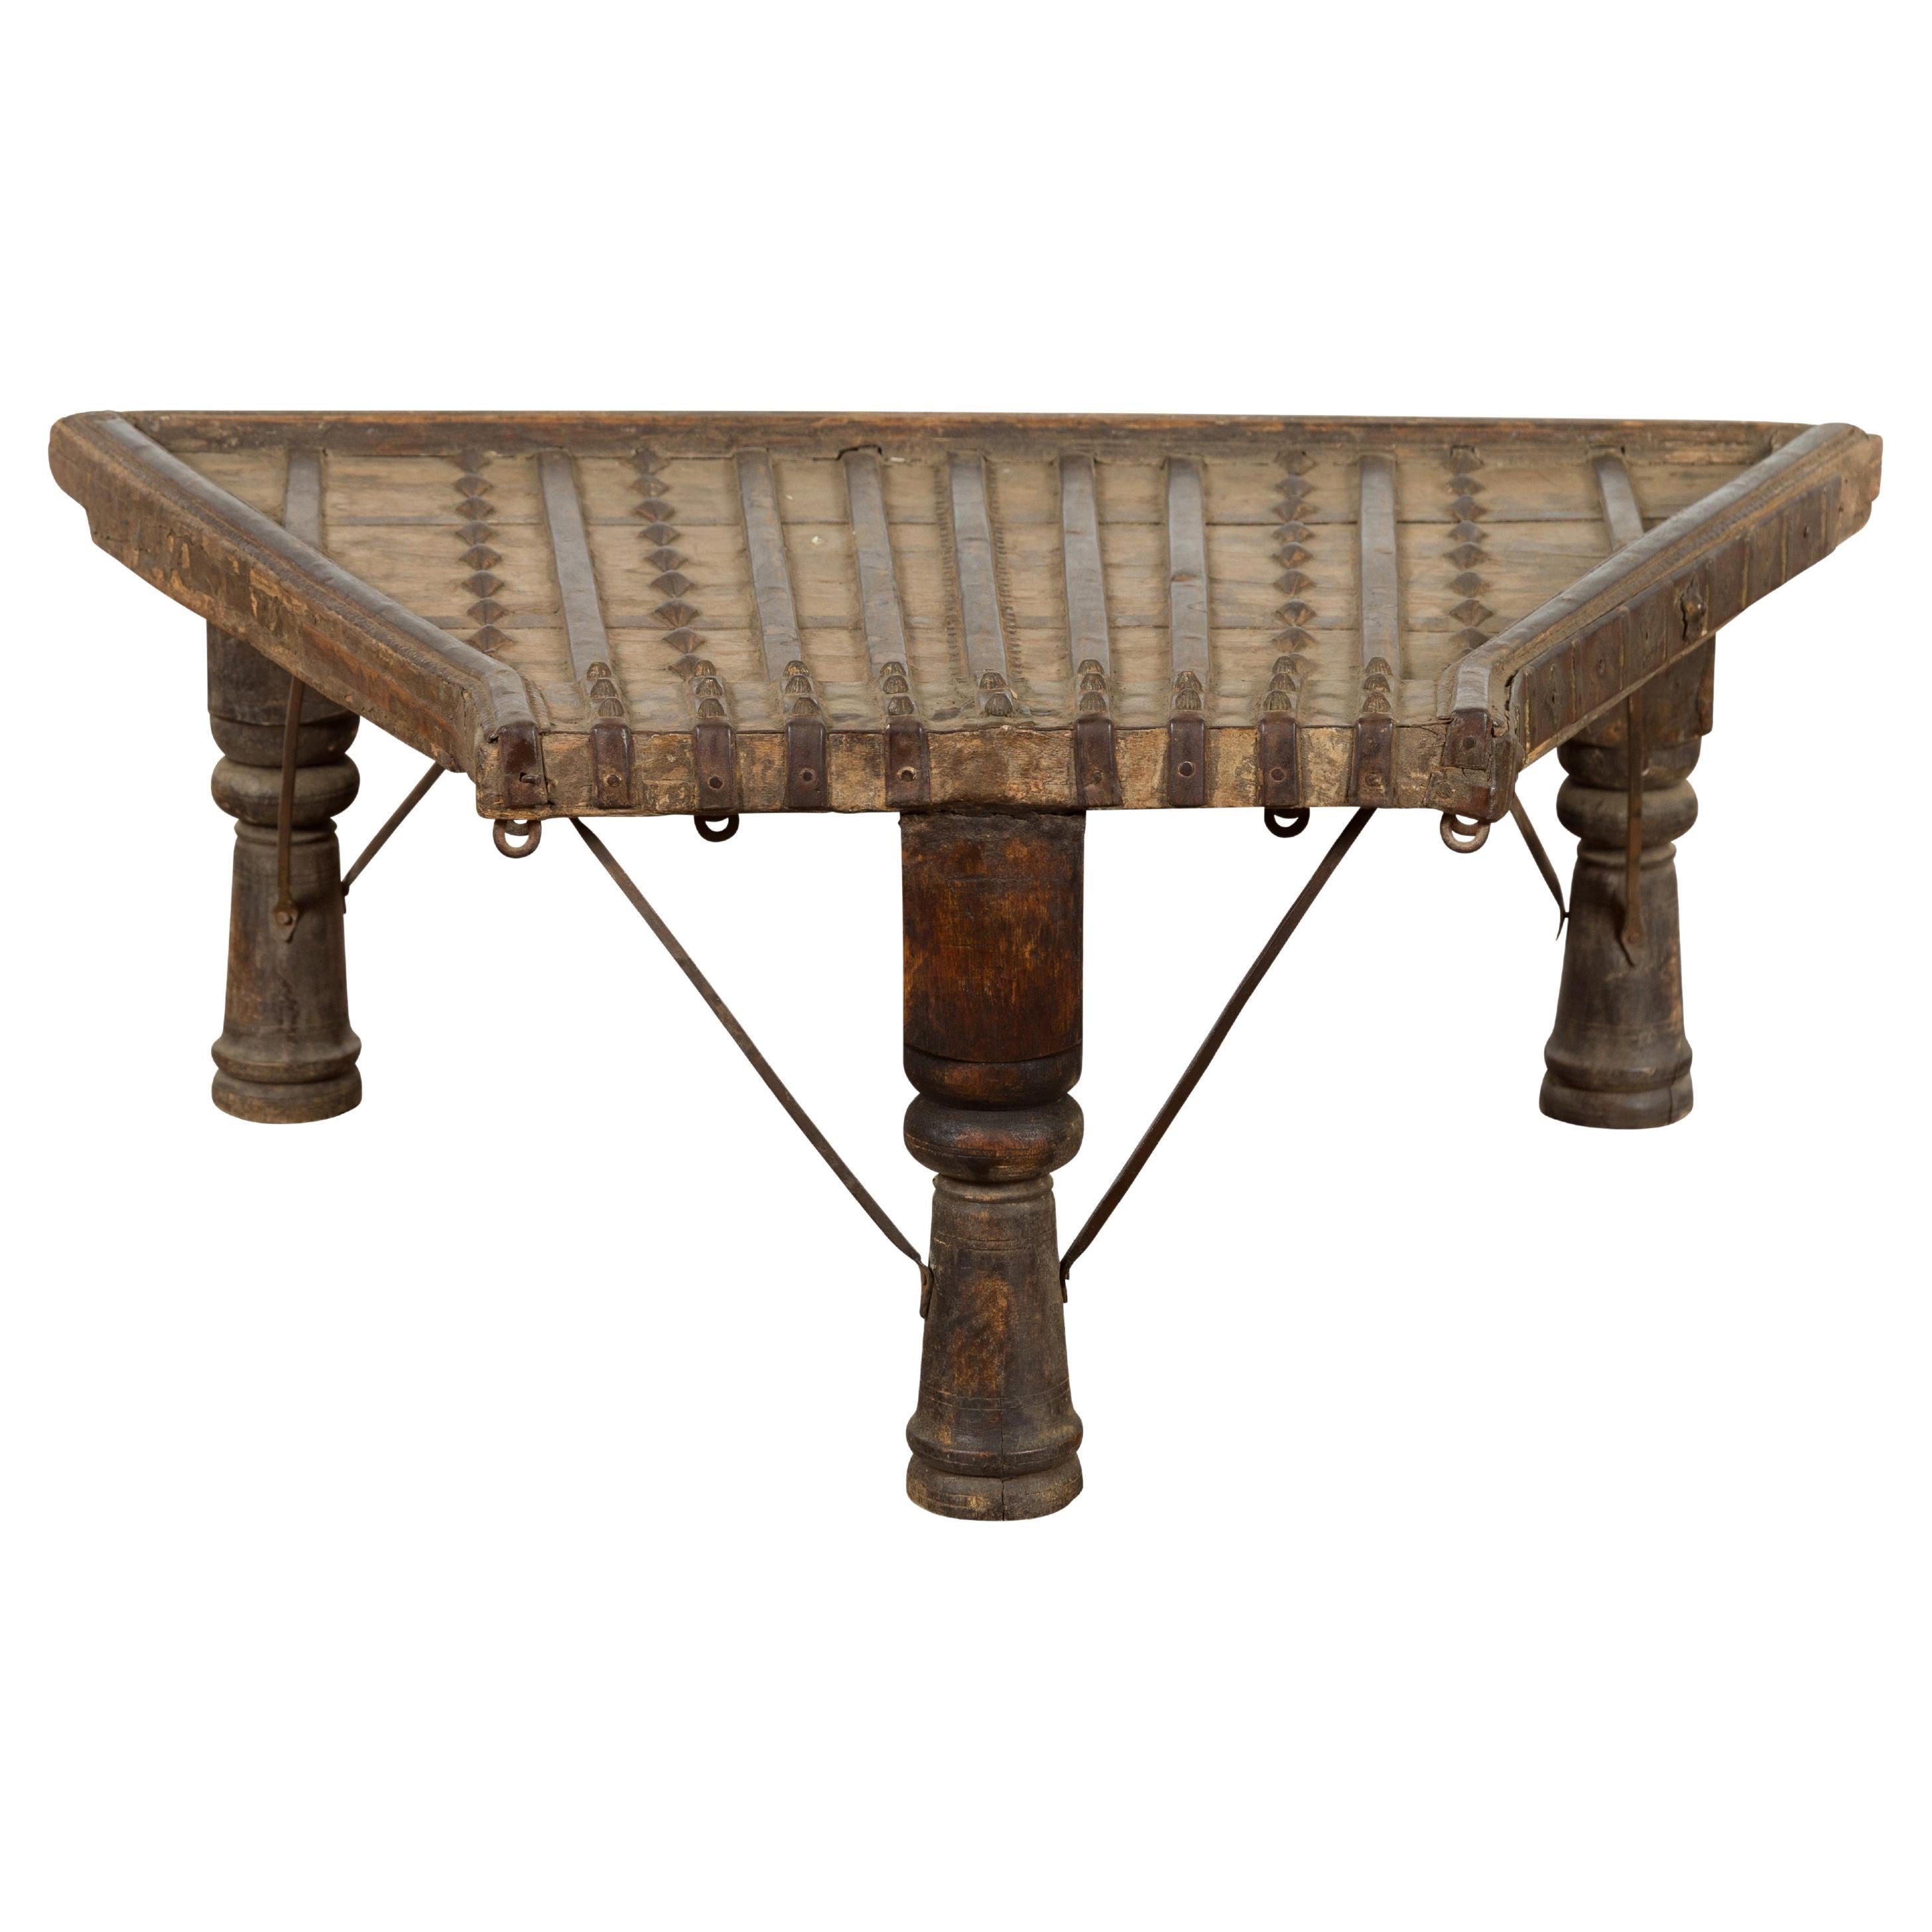 Chariot Ampoule indienne du 19ème siècle transformé en table basse avec détails en fer